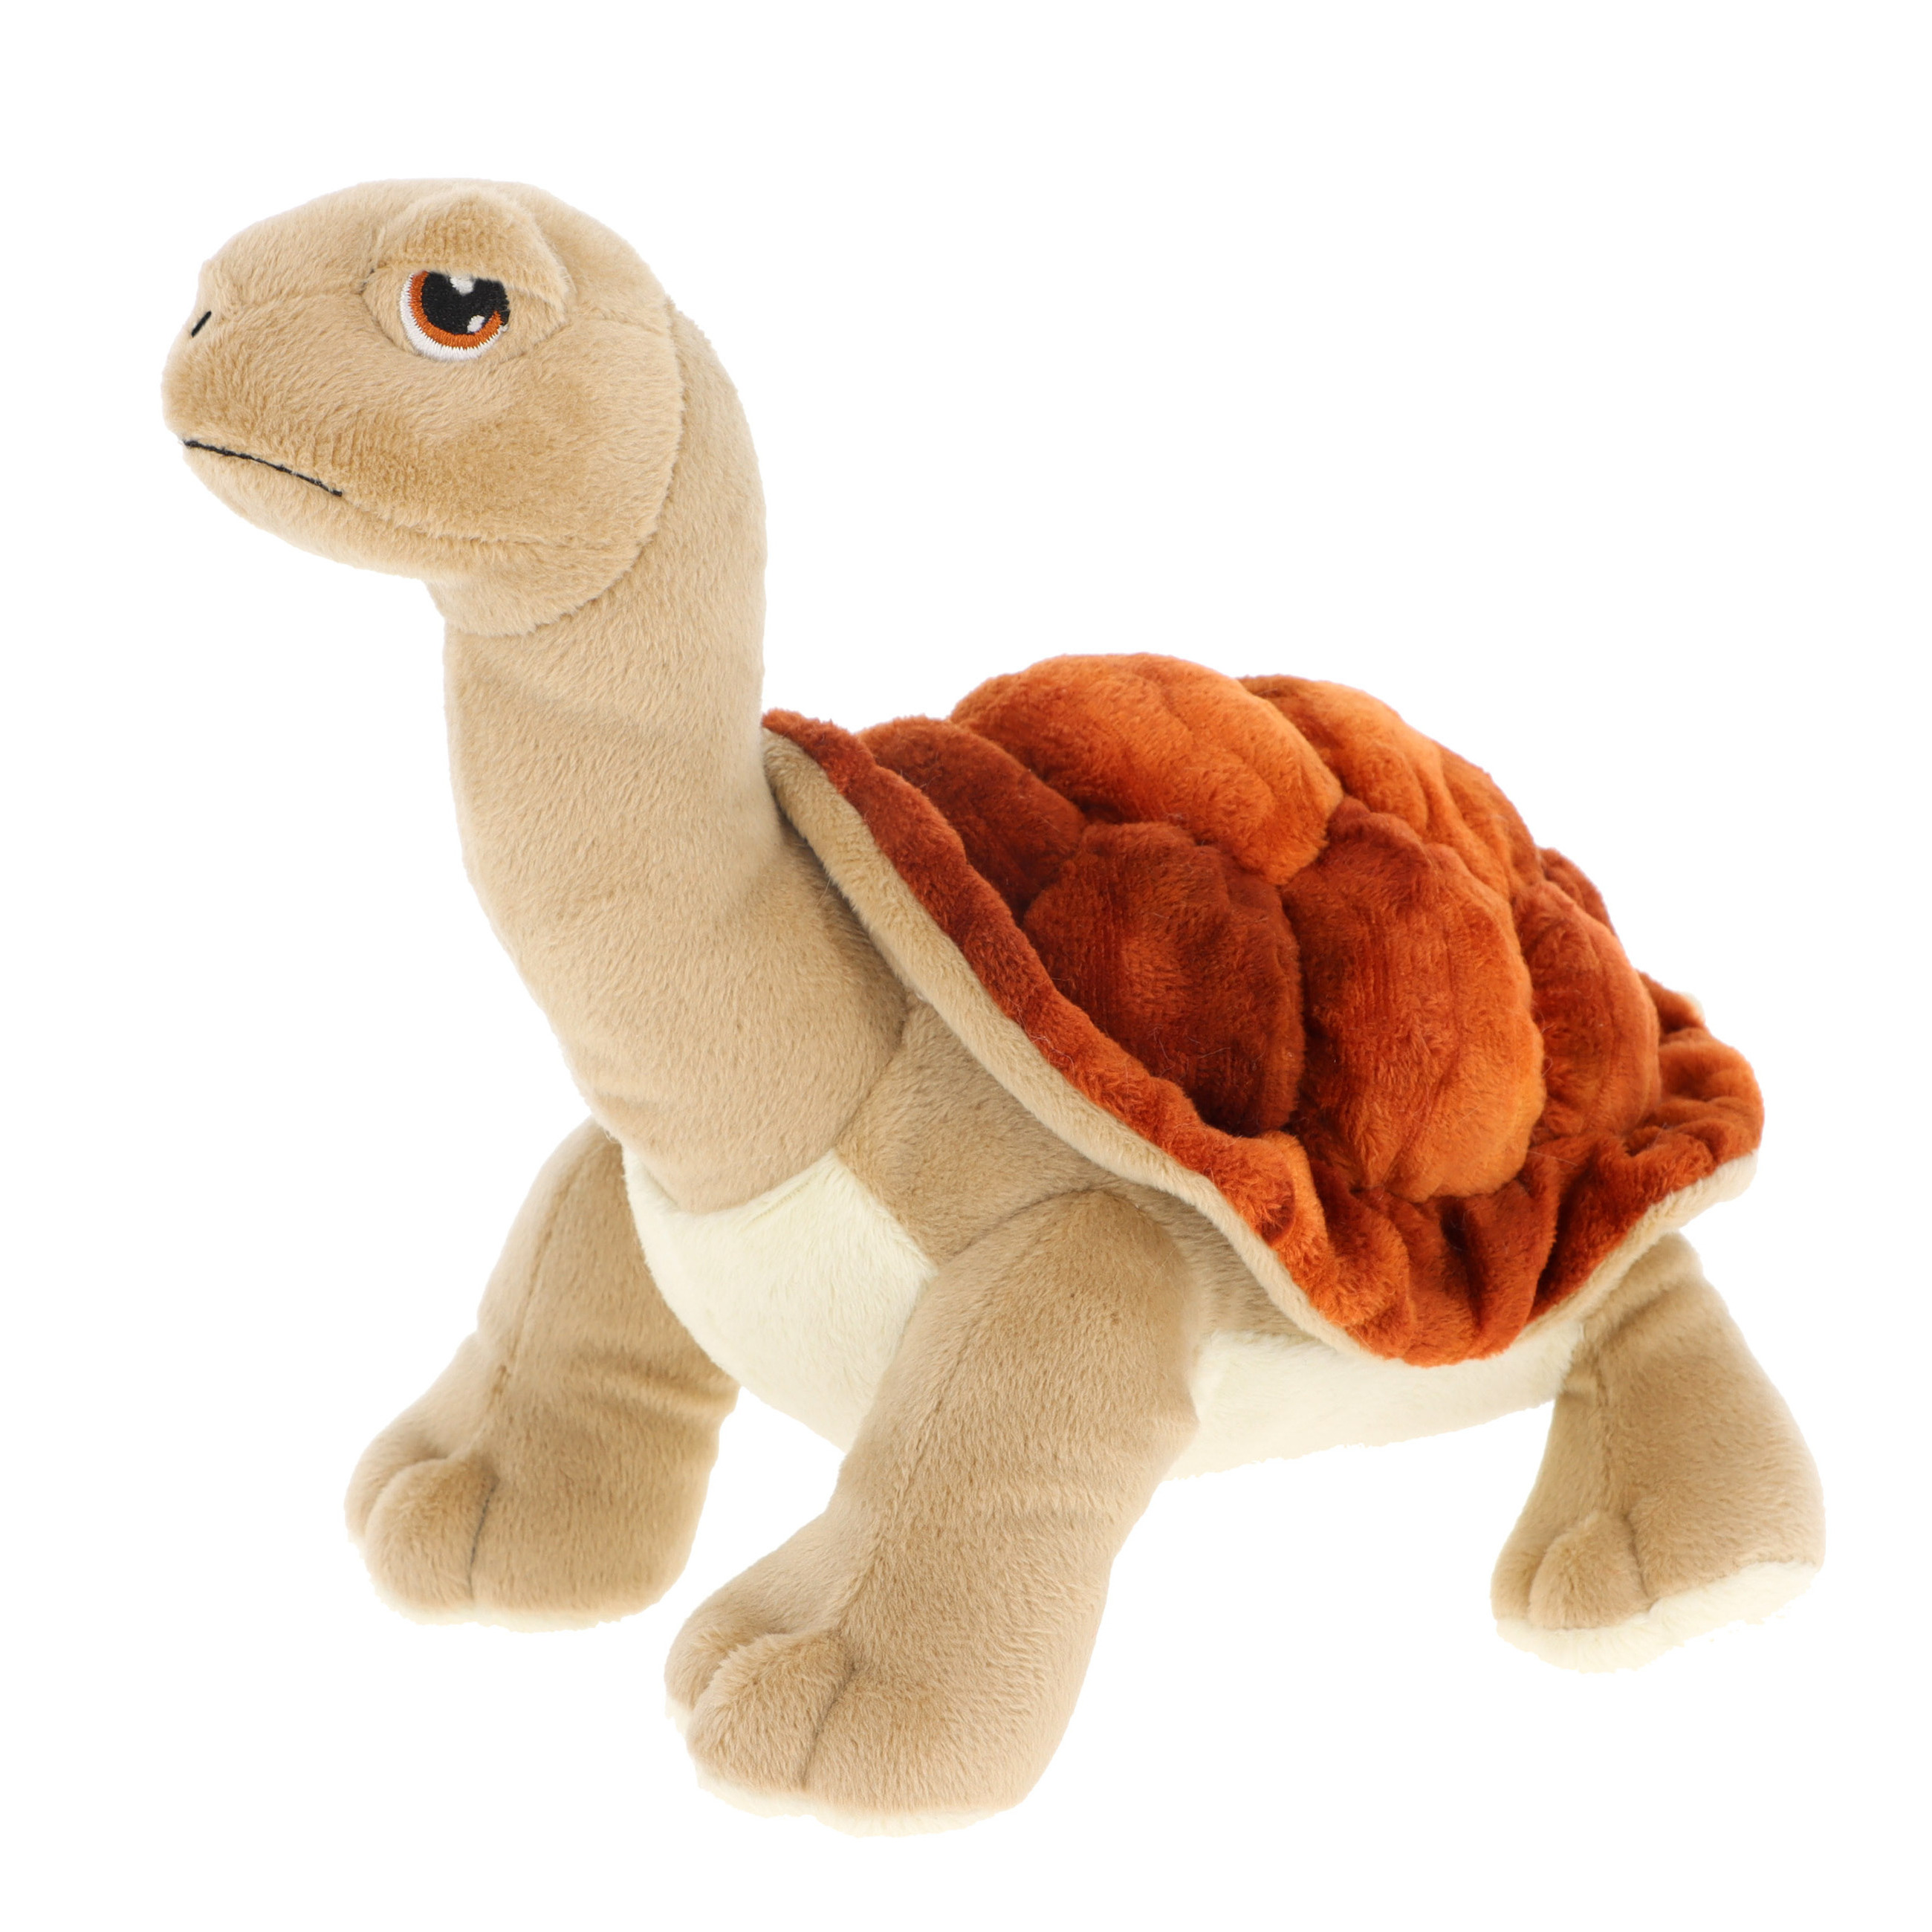 Keel Toys pluche Land schildpad knuffeldier bruin-beige lopend 25 cm